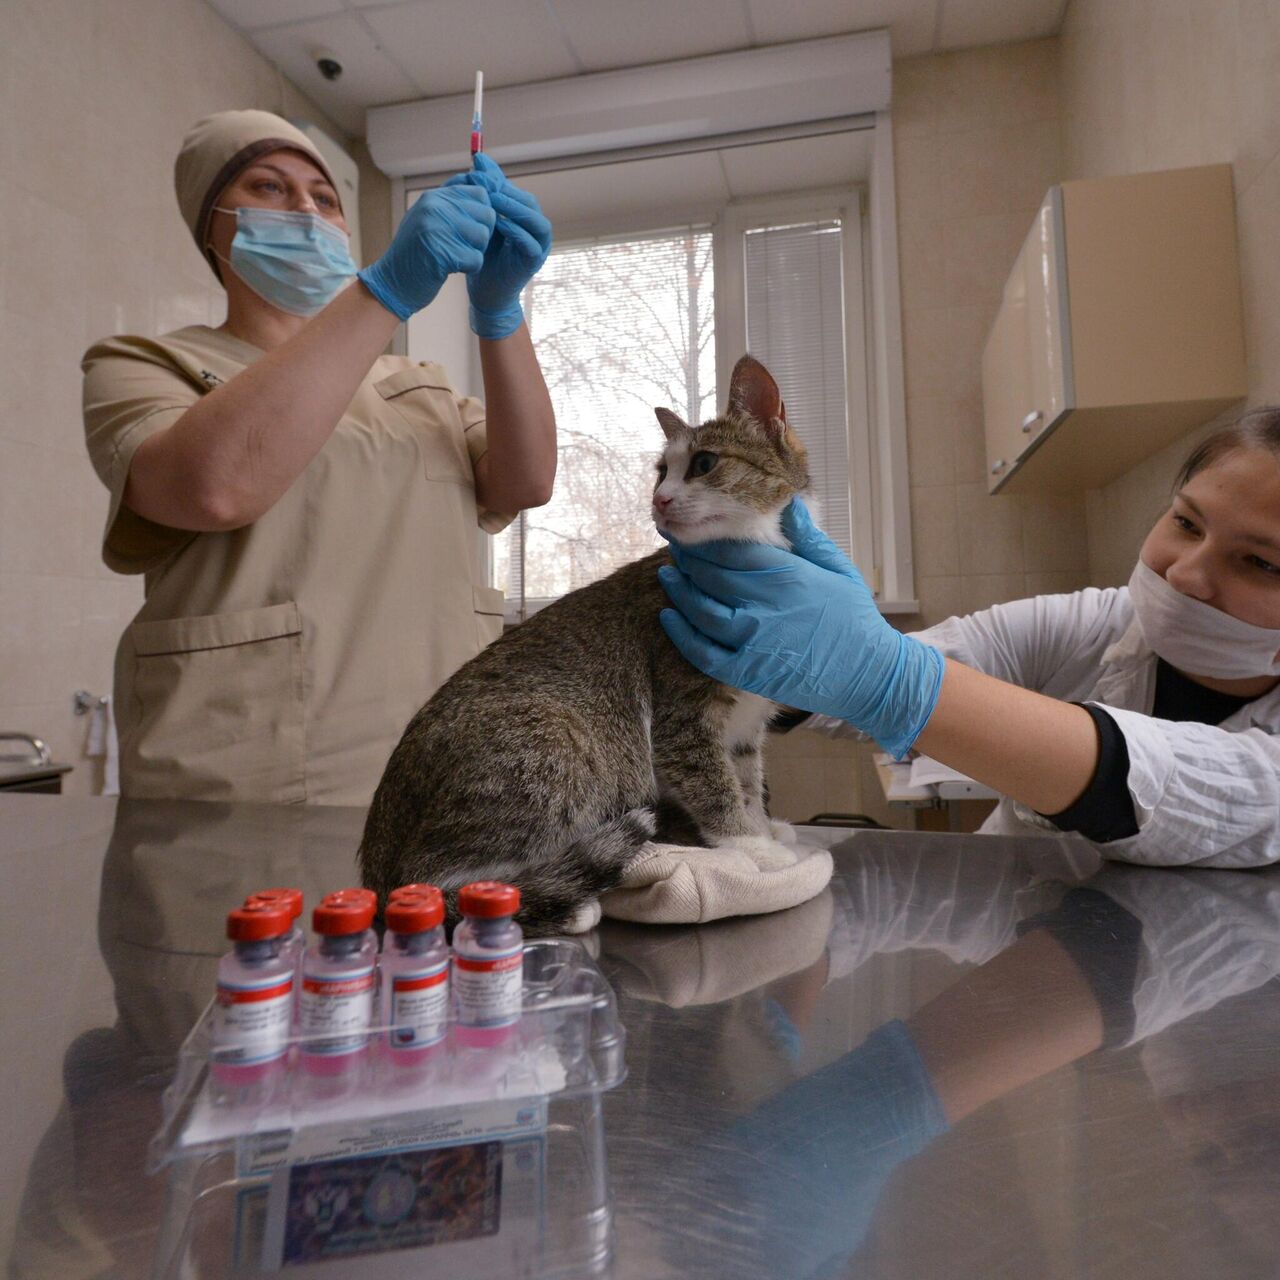 Бесплатные прививки для кошек в москве. Осмотр ветеринара платный?. Вакцинация котят. Вакцинация на ферме.